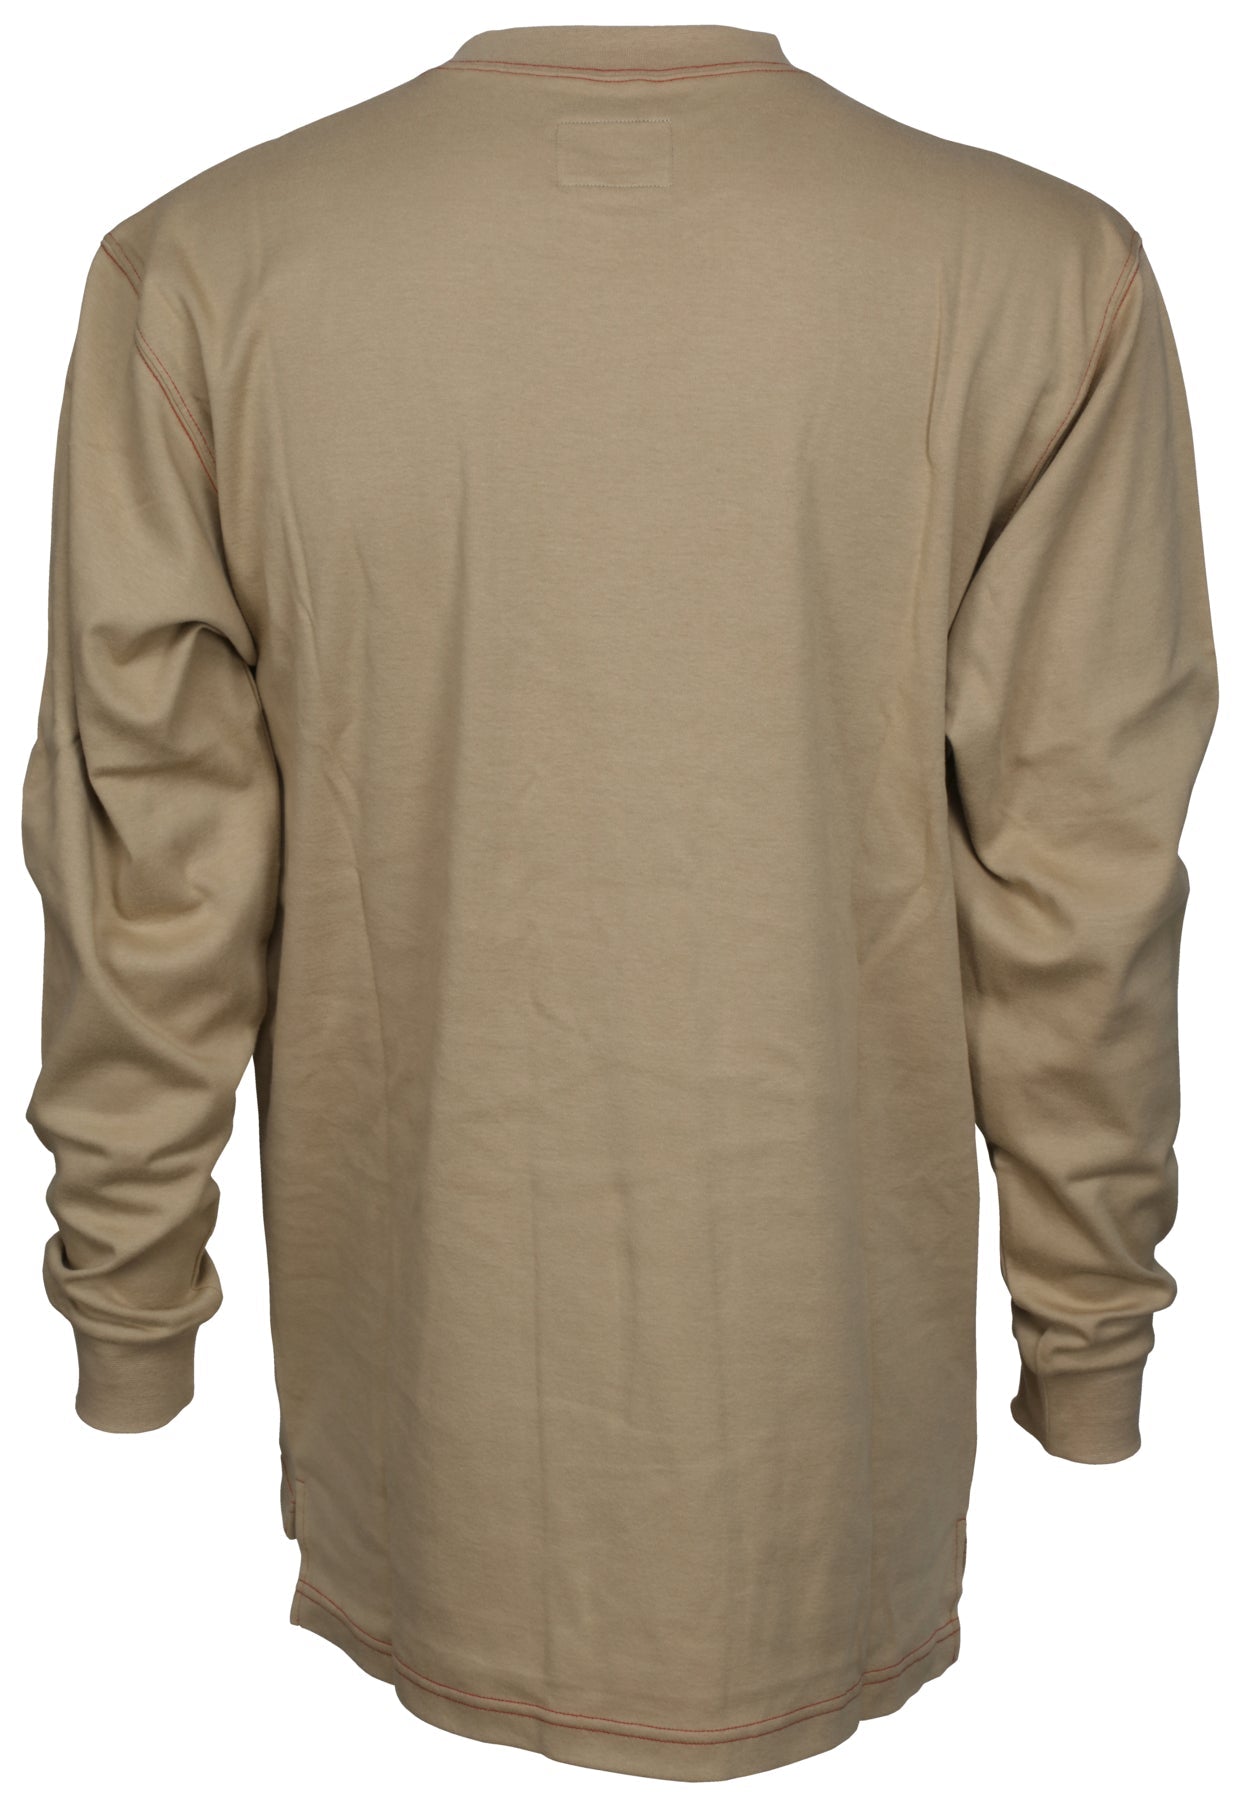 LST1T - FR Long Sleeve T-Shirt Tan